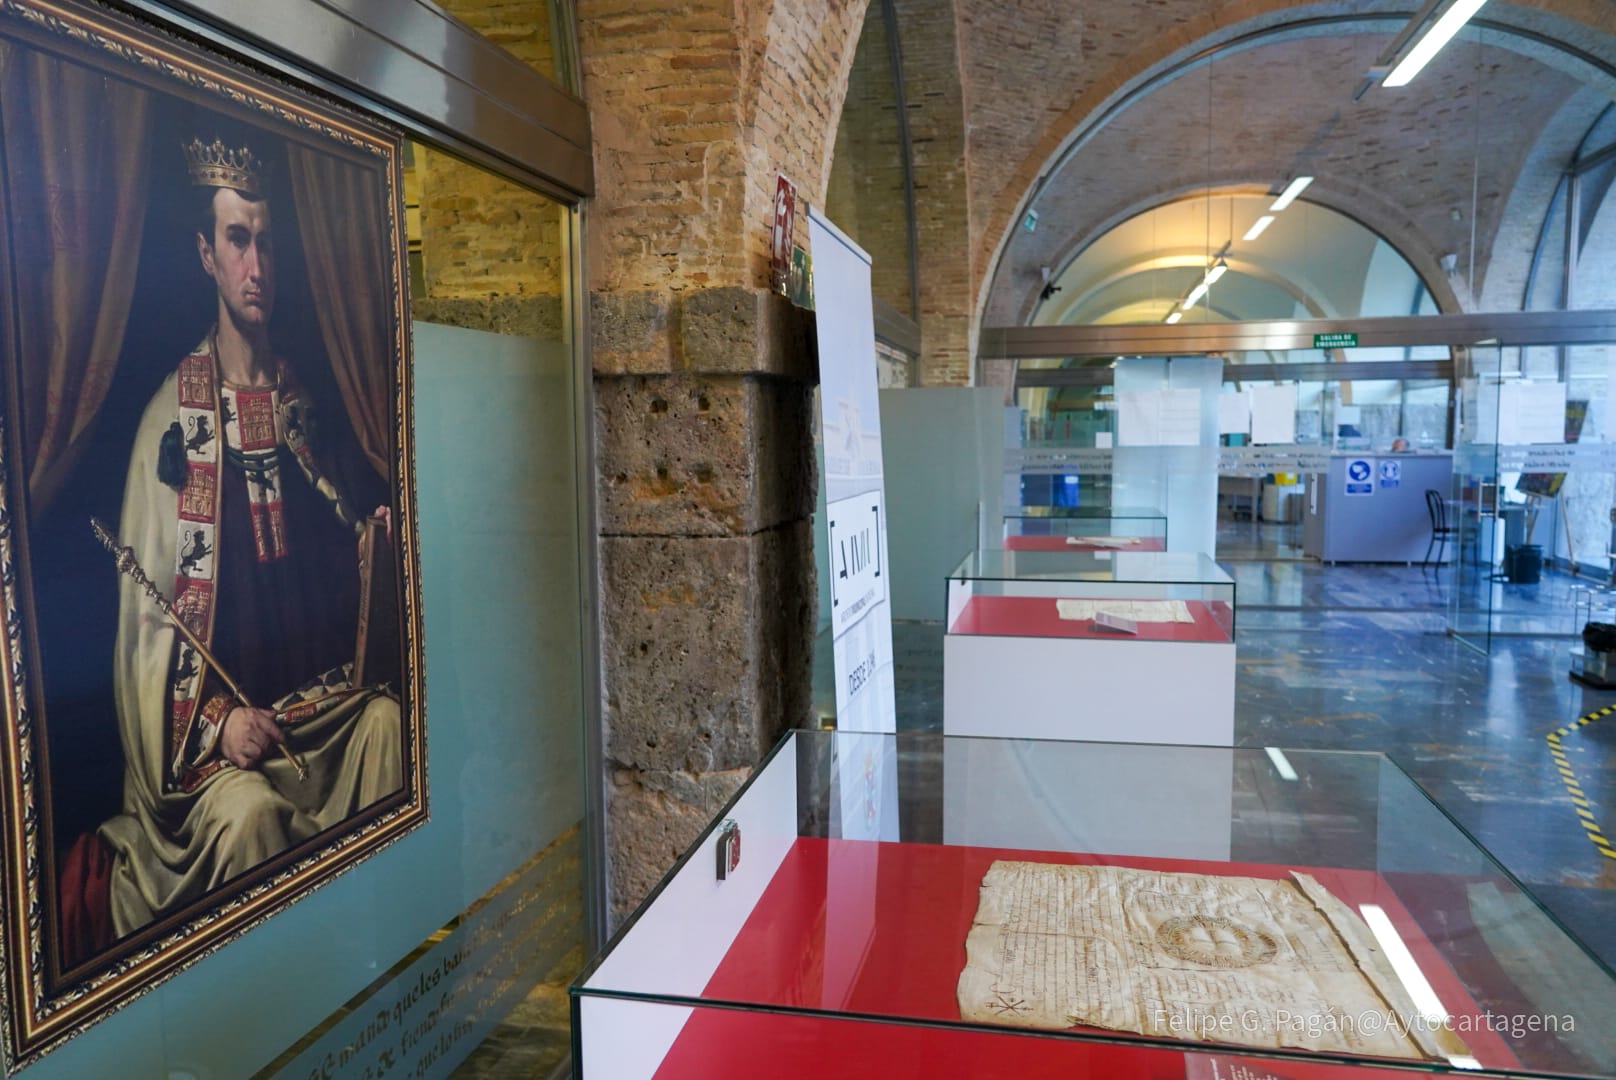 Imagen de archivo de la exposición 'Cartagena, ciudad castellana desde 1246', que fue expuesta en el Archivo municipal